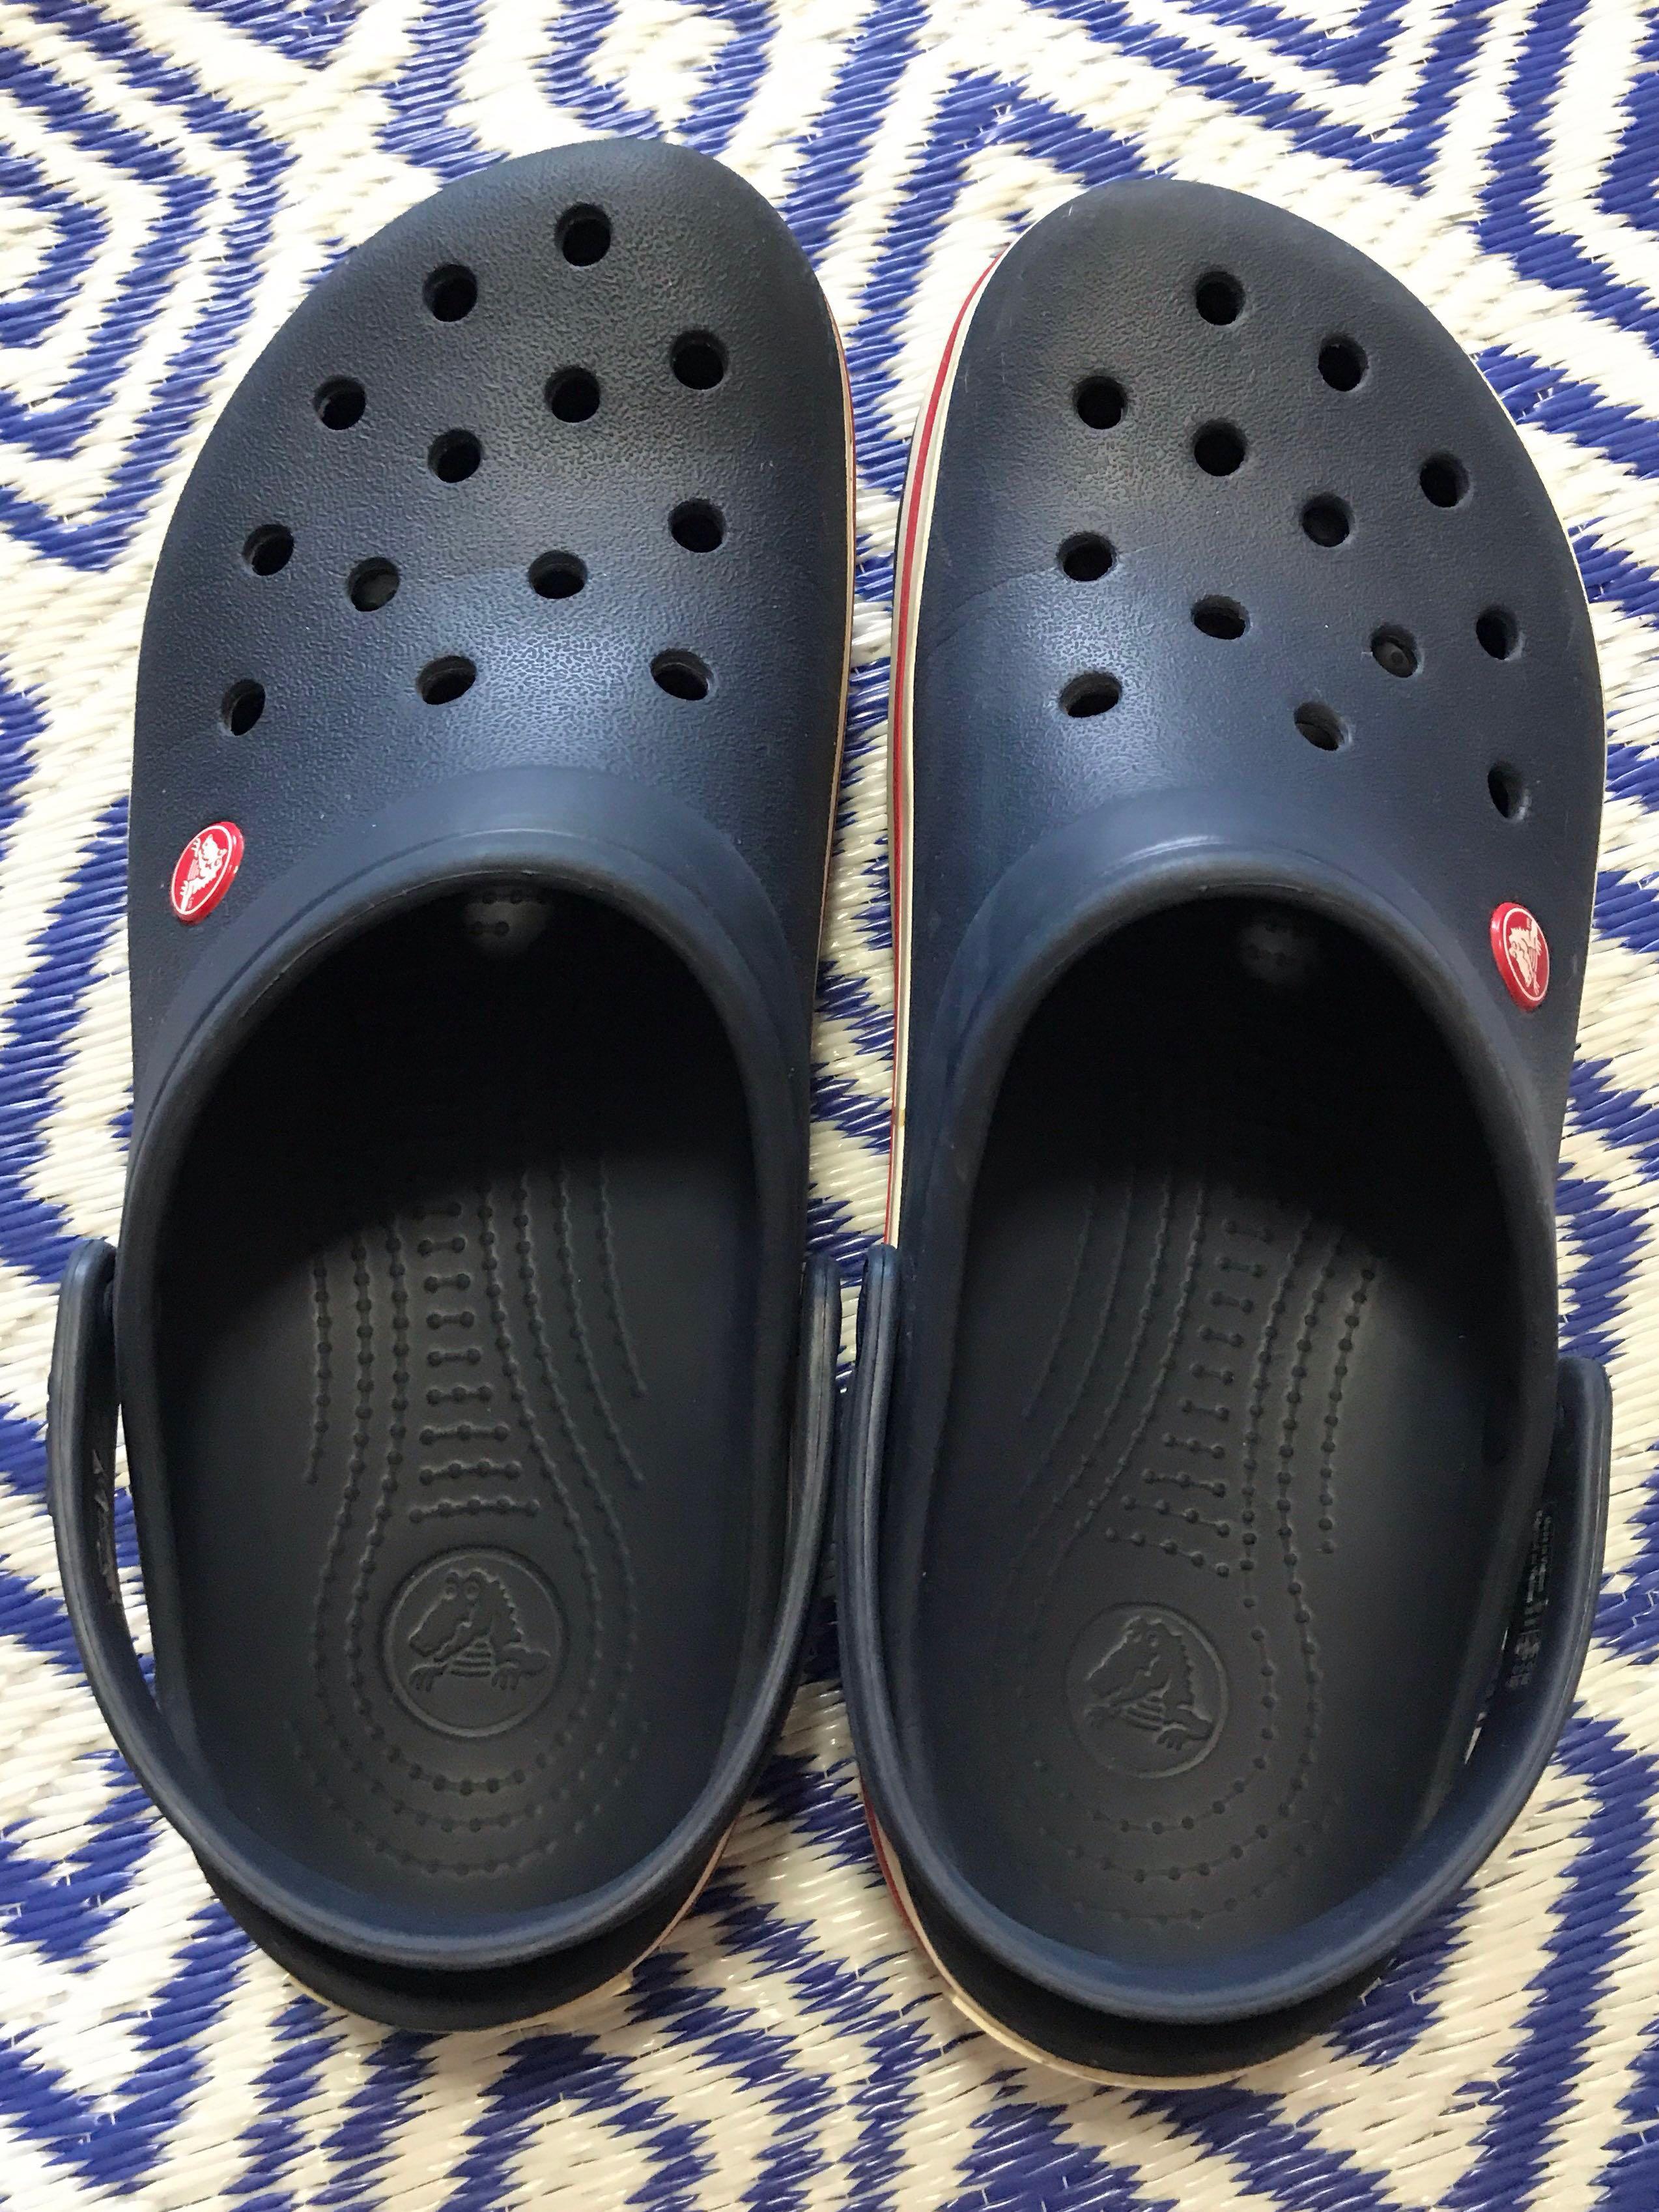 Crocs Men's Sandals, Men's Fashion 